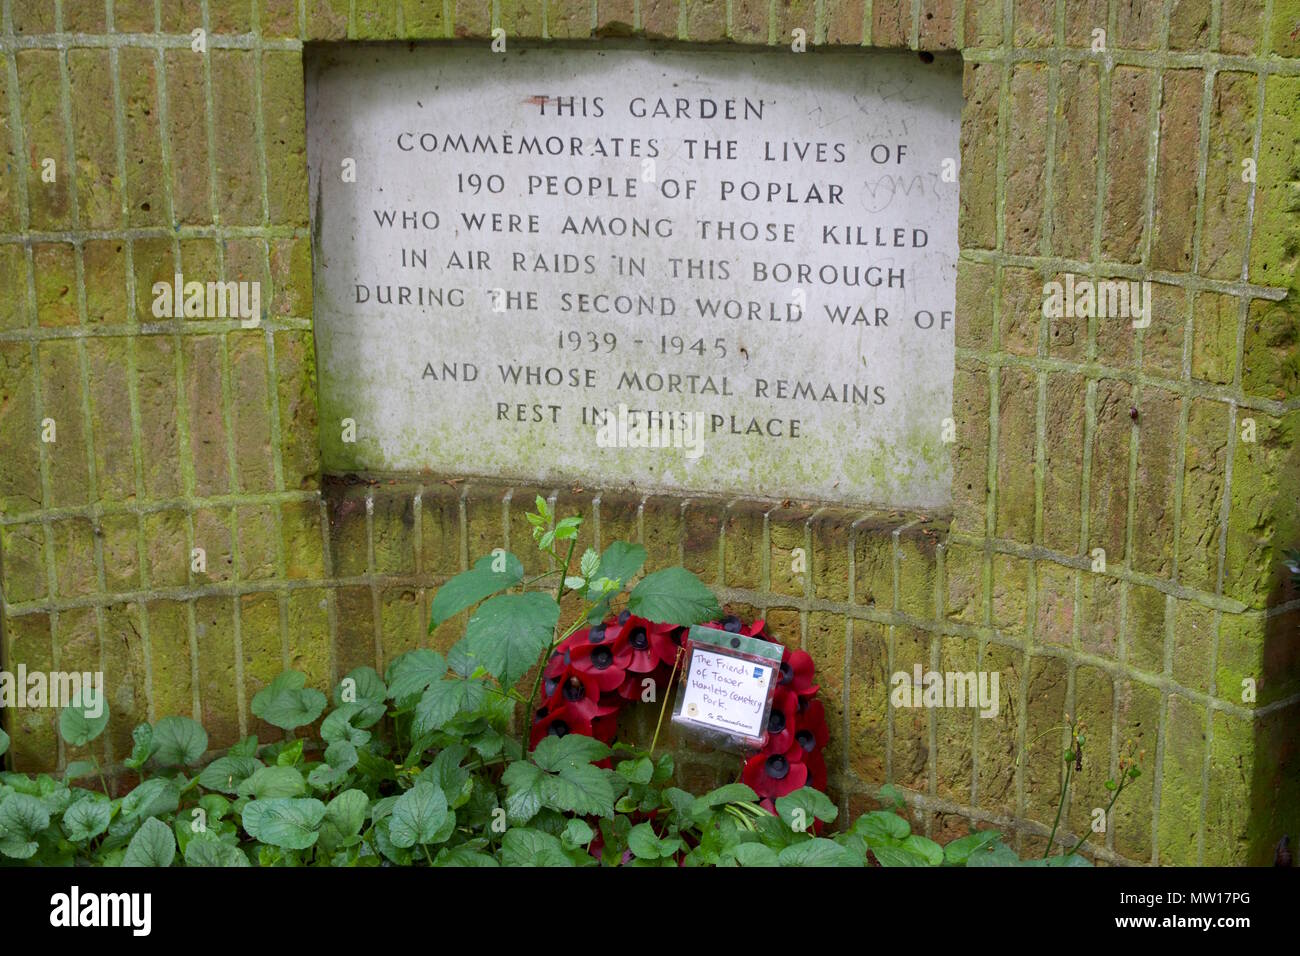 Denkmal mit einer Mohnblume Kranzniederlegung in Tower Hamlets Friedhof Park für 190 Personen von Pappel, die bei Luftangriffen während des Zweiten Weltkrieges getötet wurden. Stockfoto